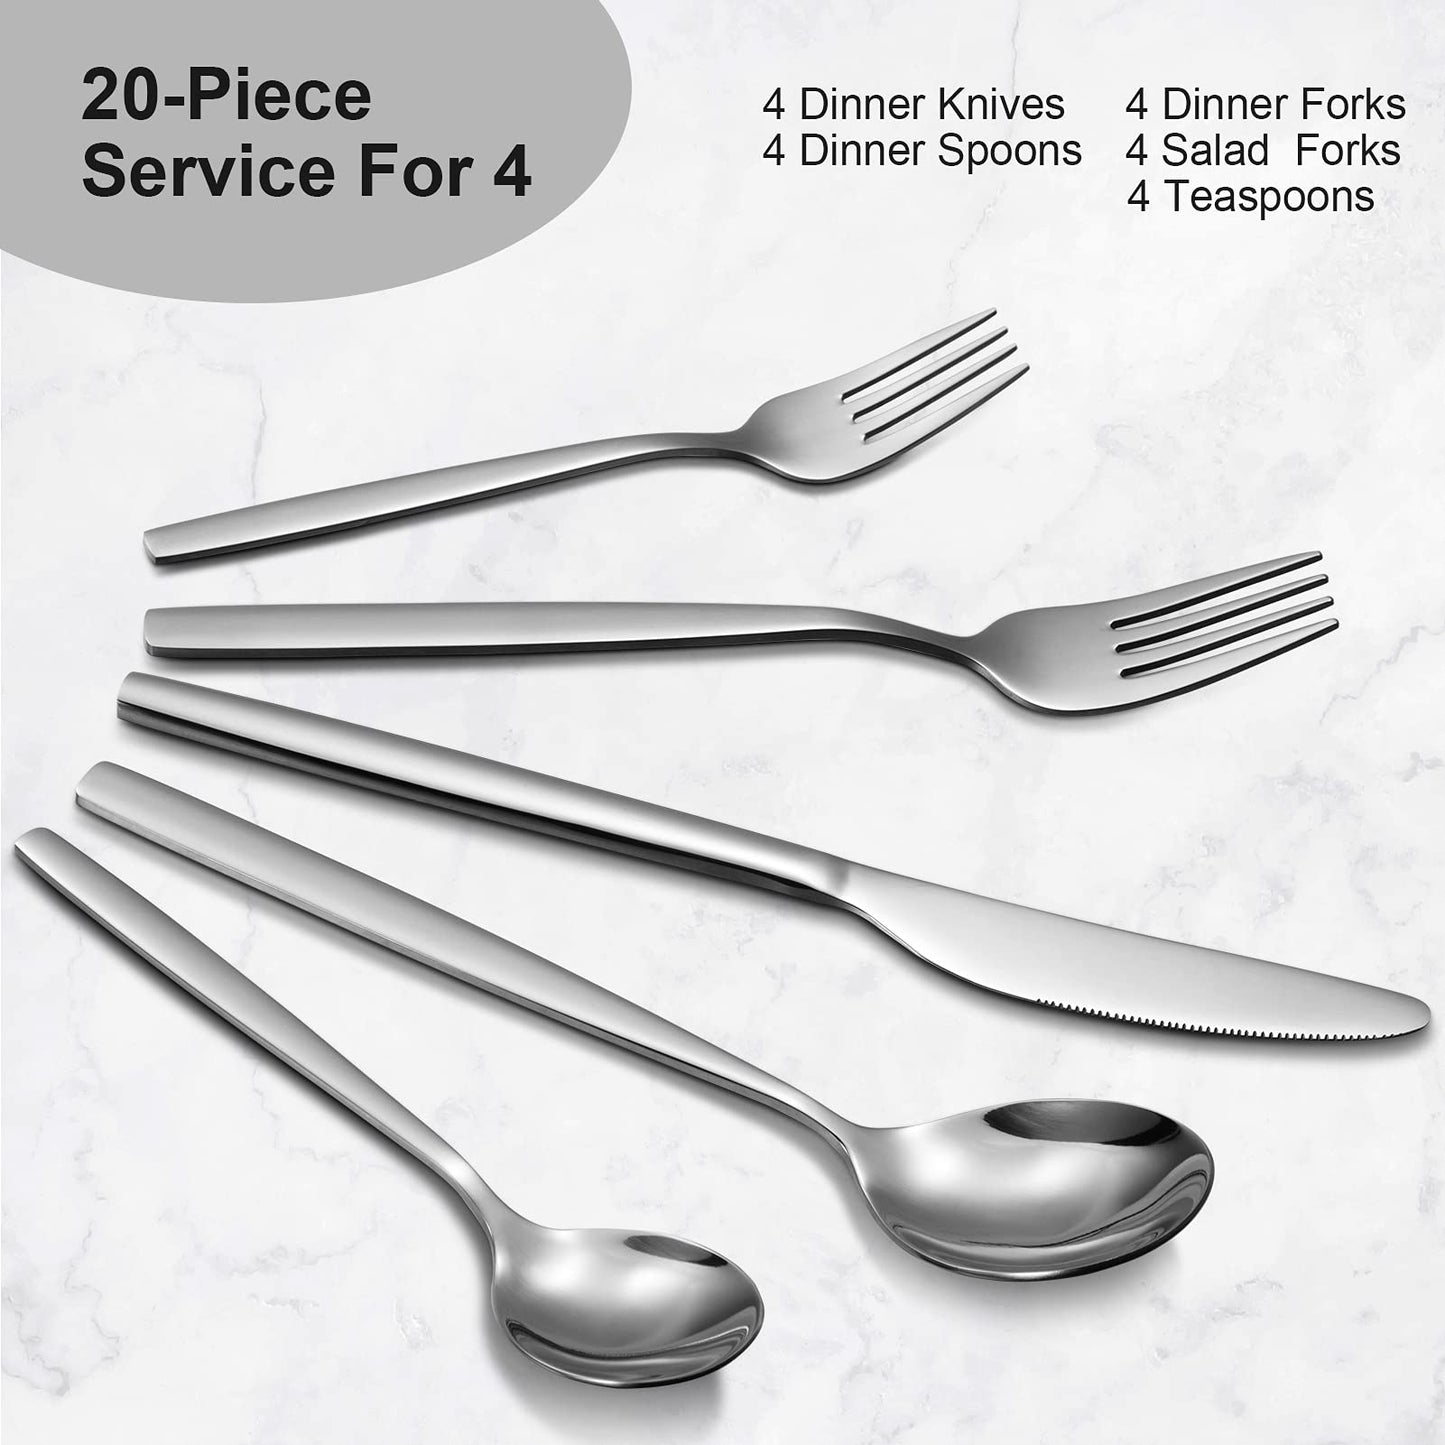 CIBEAT 40 Piece Stainless Steel Kitchen Flatware Set - Silver